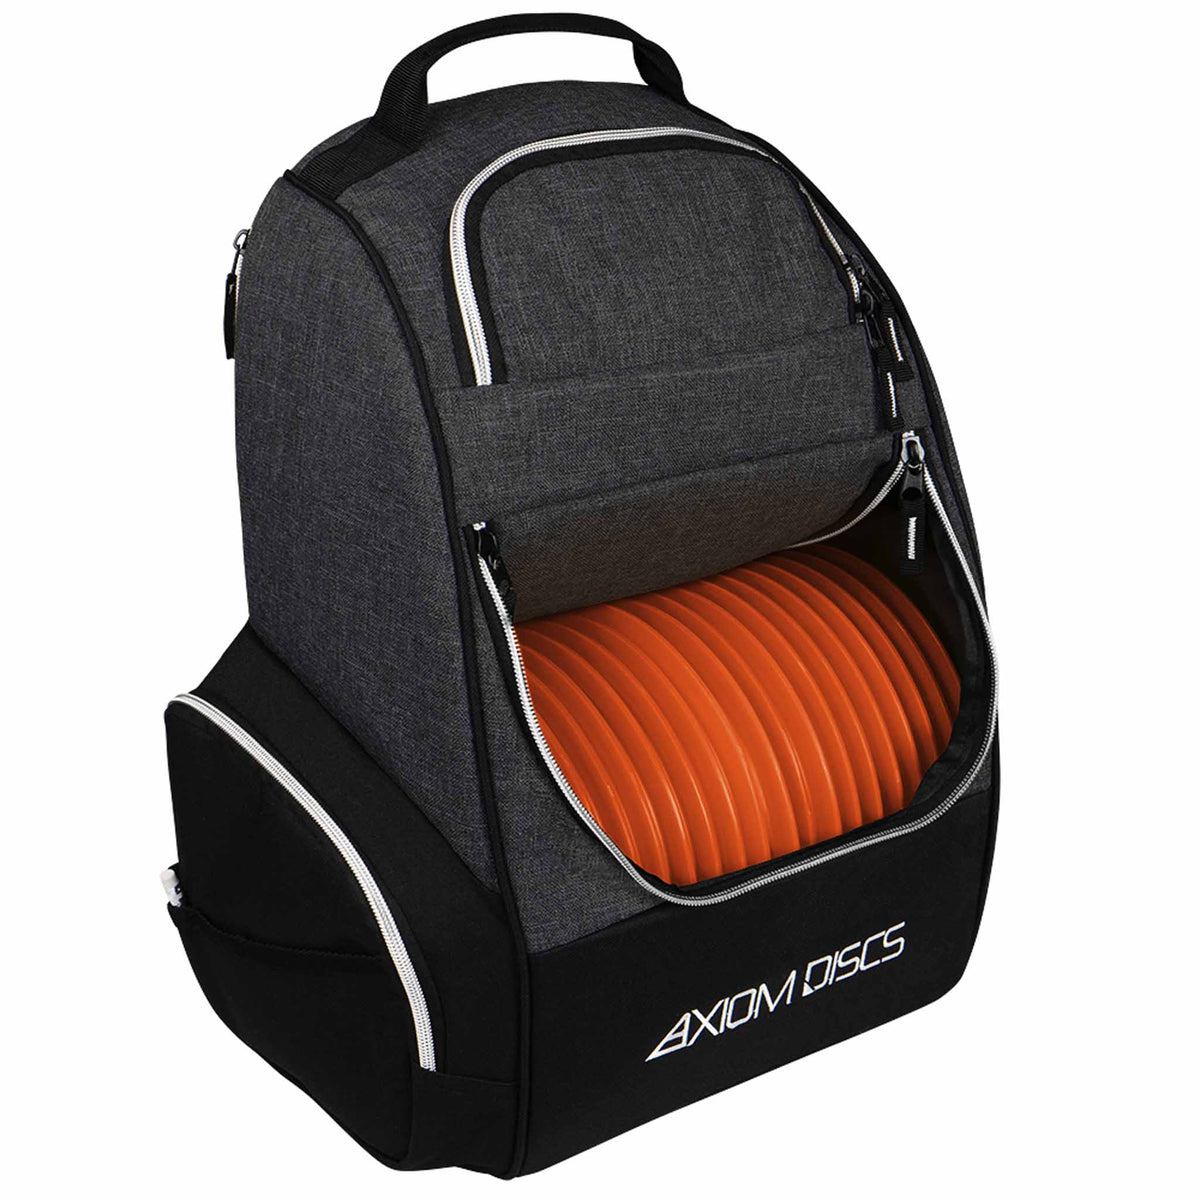 Axiom Shuttle Disc Golf Bag - Black